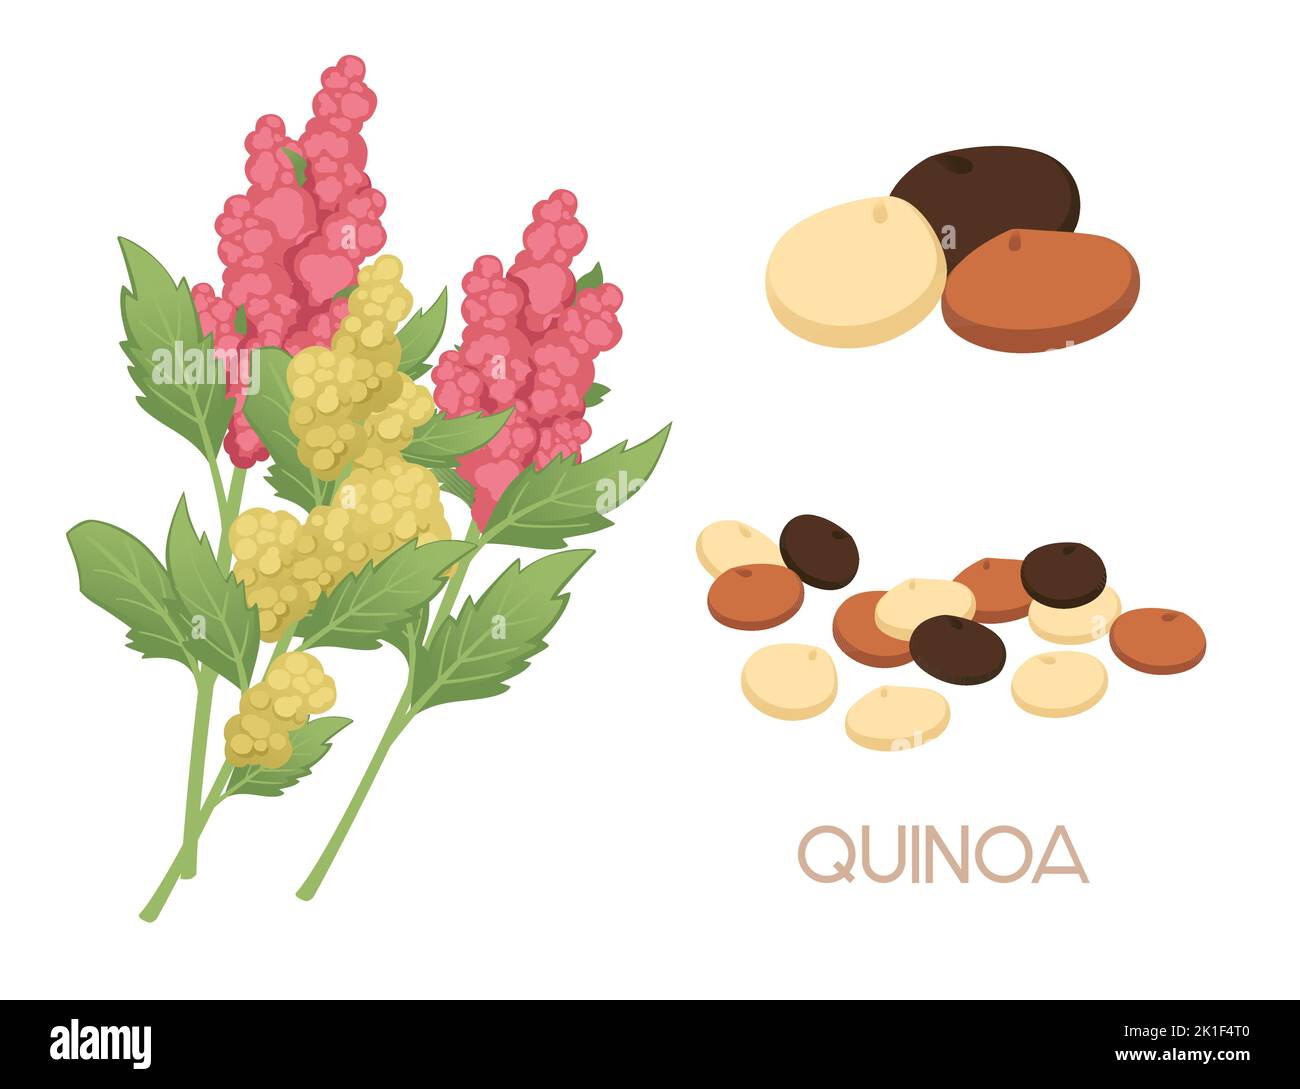 Quinoa plante agricole avec des semences vecteur de grain illustration isolée sur fond blanc Illustration de Vecteur